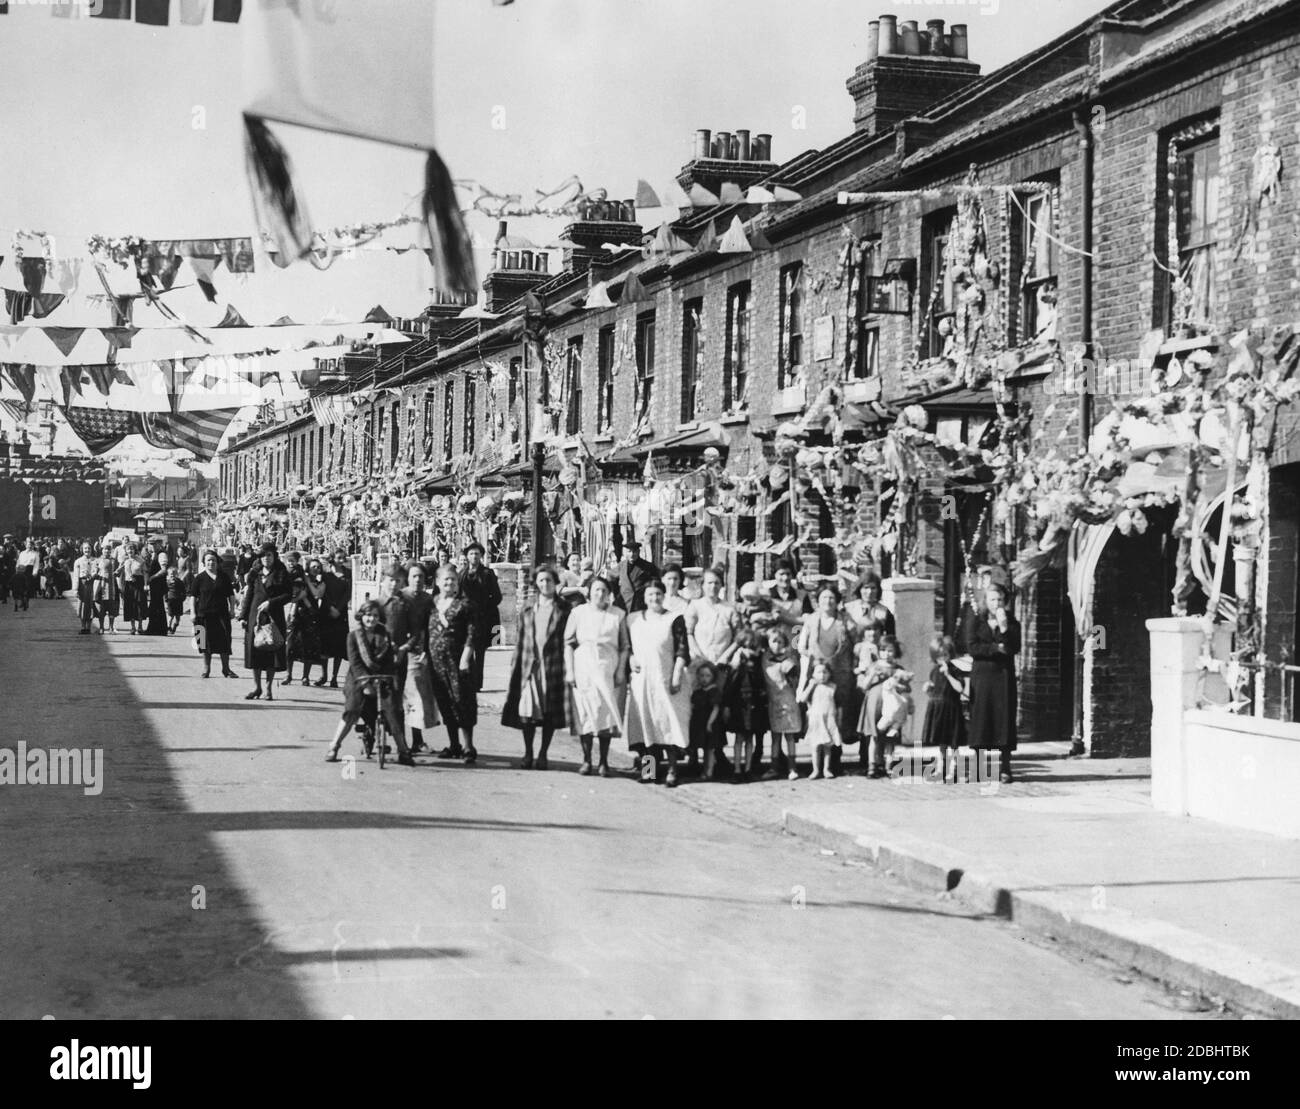 Festlich geschmückte Straße in Süd-London zu Ehren des 25. Thronjubiläums von König Georg V. an diesem Tag besuchte der König die ärmeren Bezirke Lambeth, Battersea und Wendsworth. Stockfoto